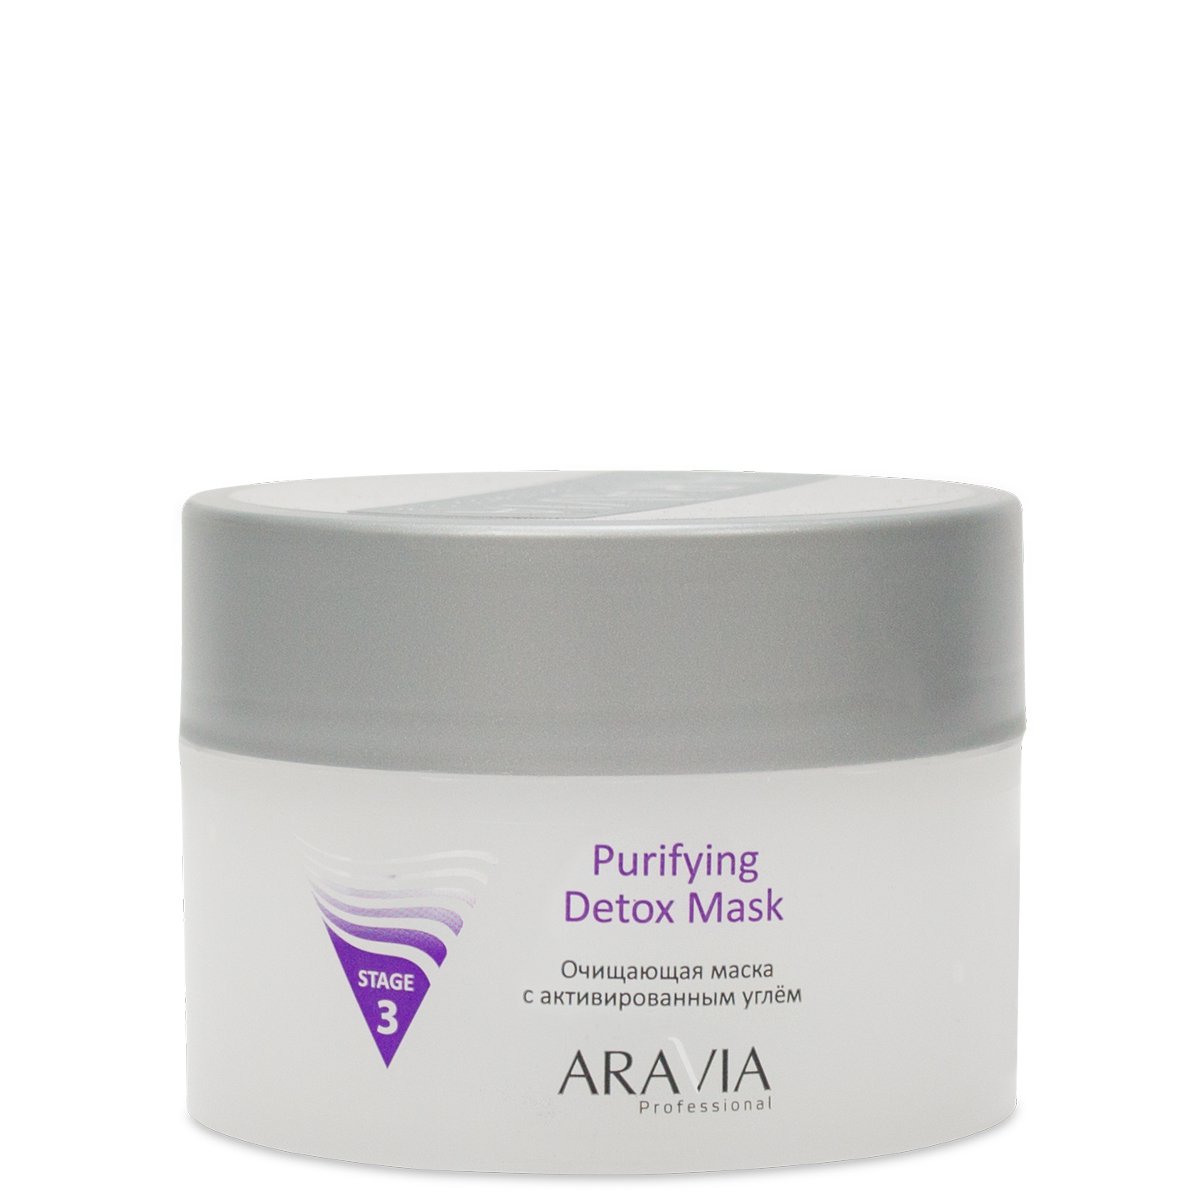 ARAVIA Professional Очищающая маска с активированным углём Purifying Detox Mask, 150 мл.